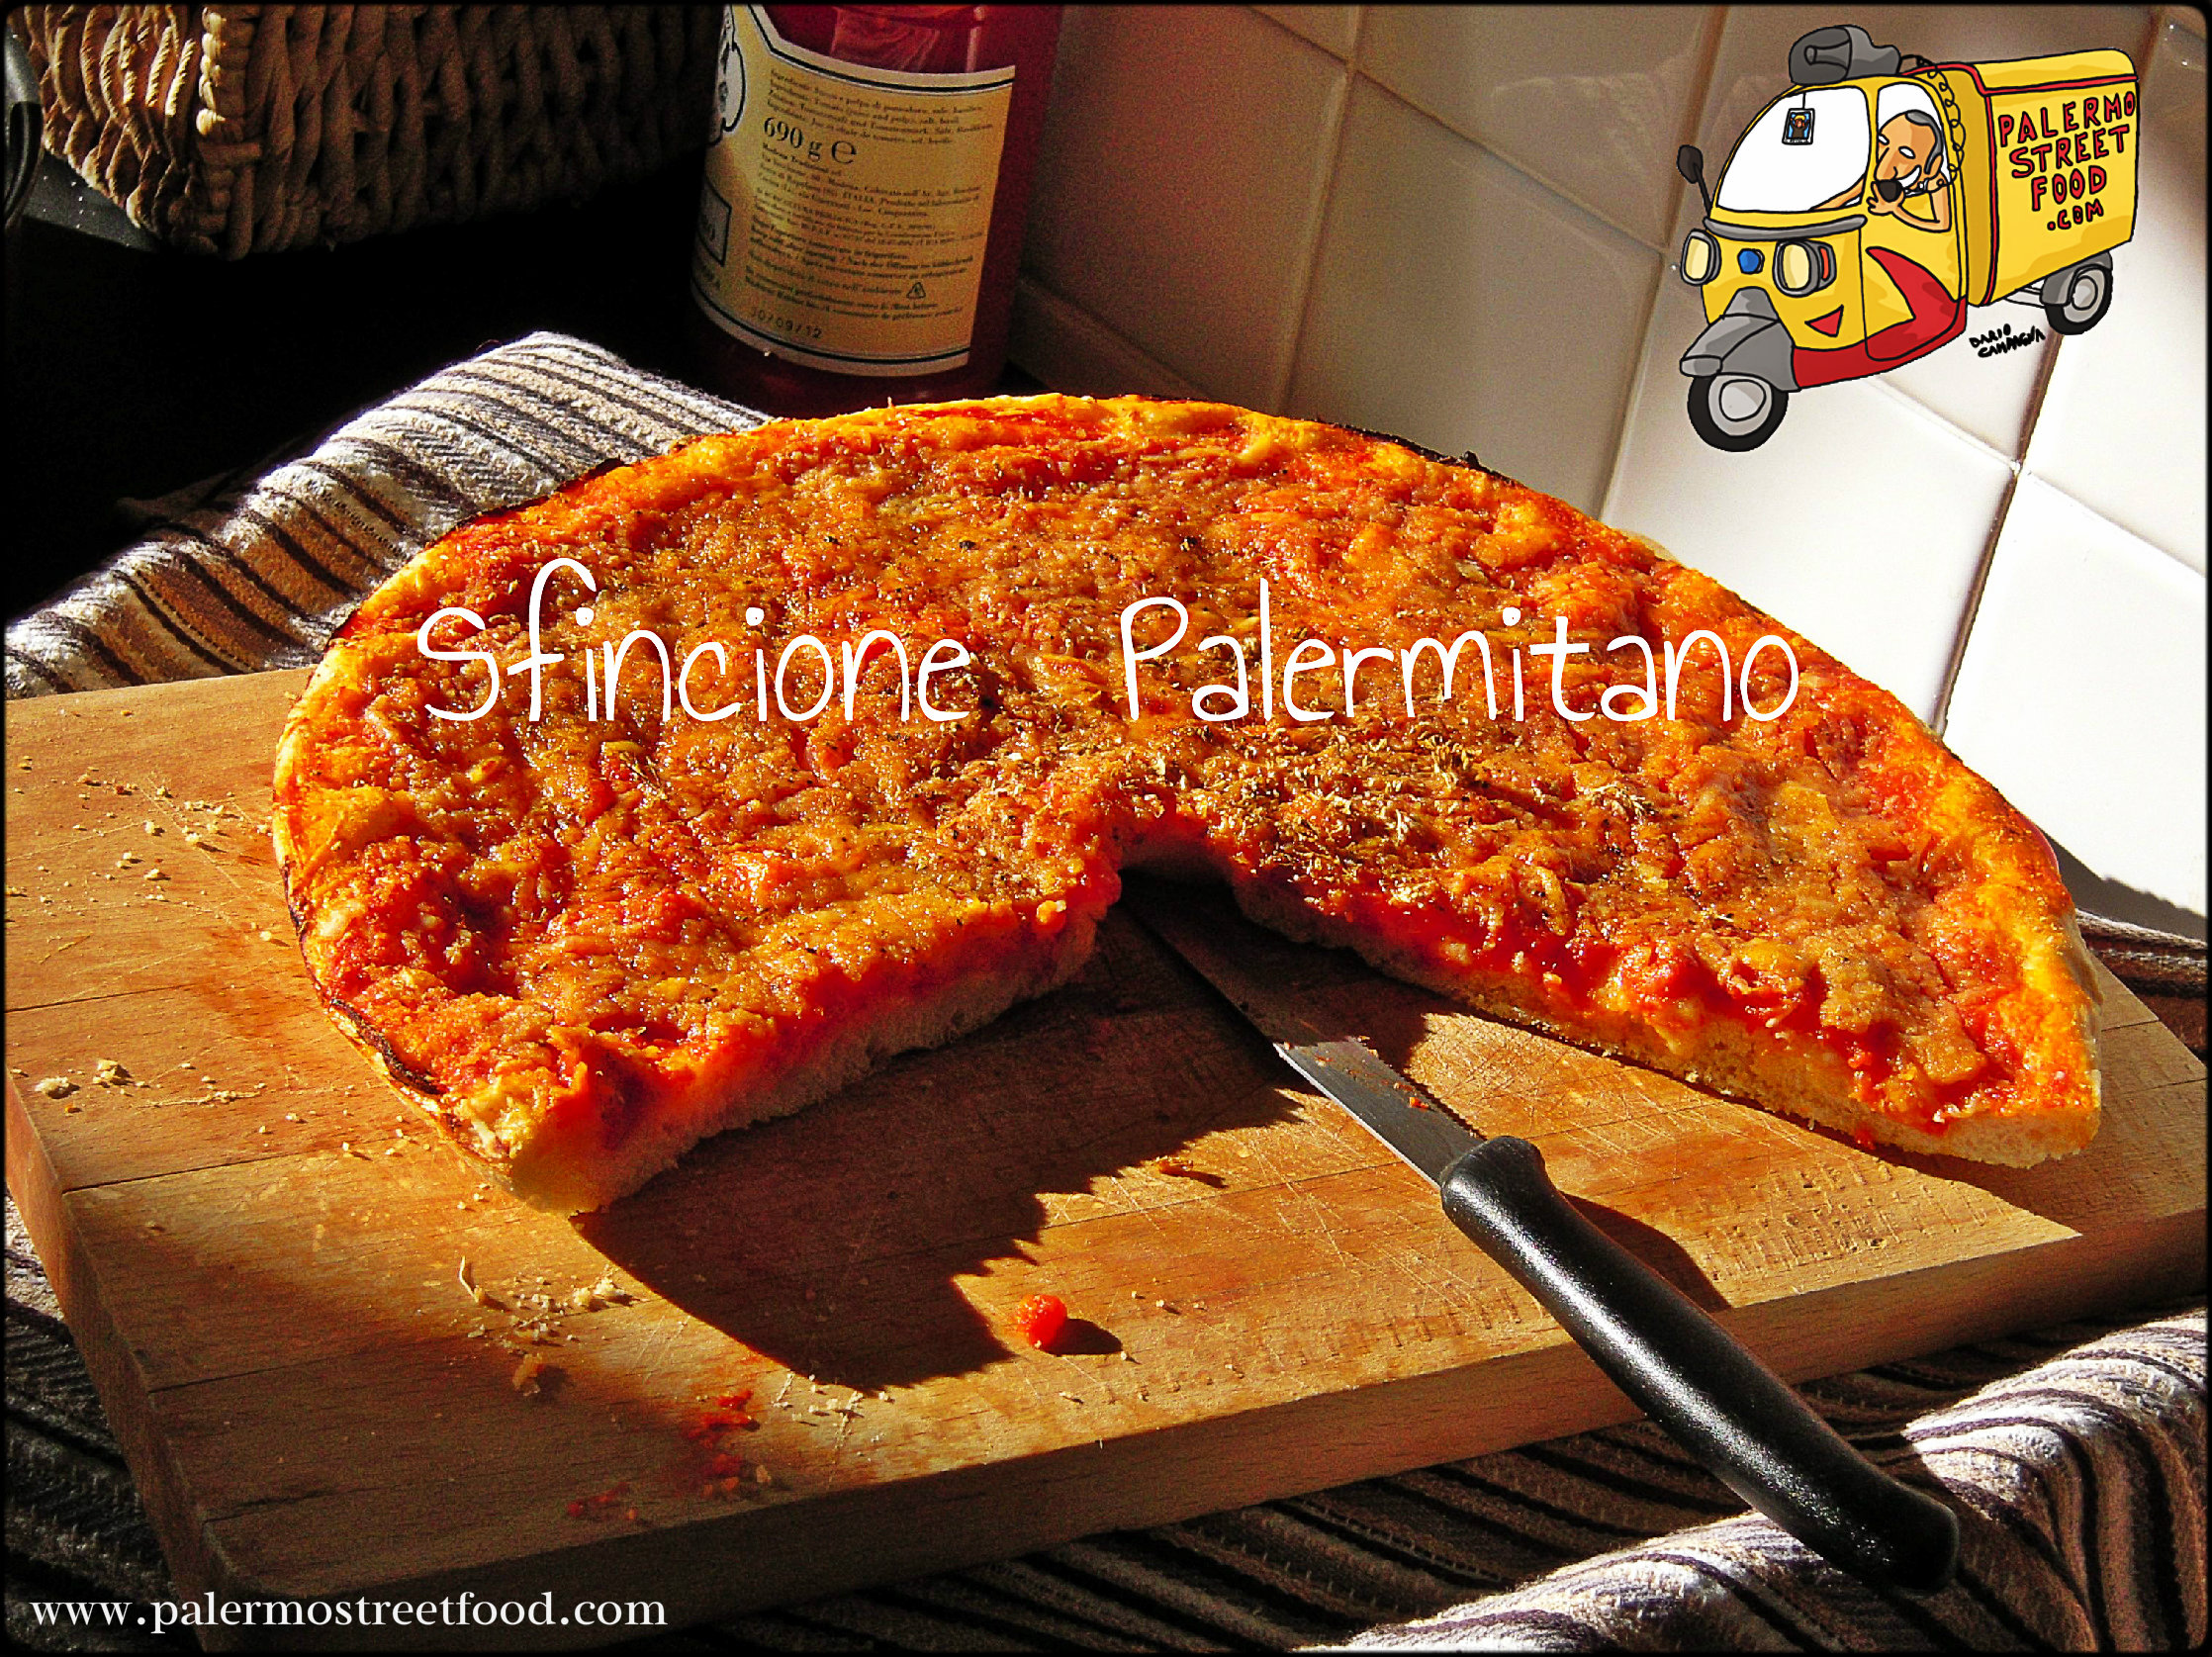 How to Make Sfincione Palermitano